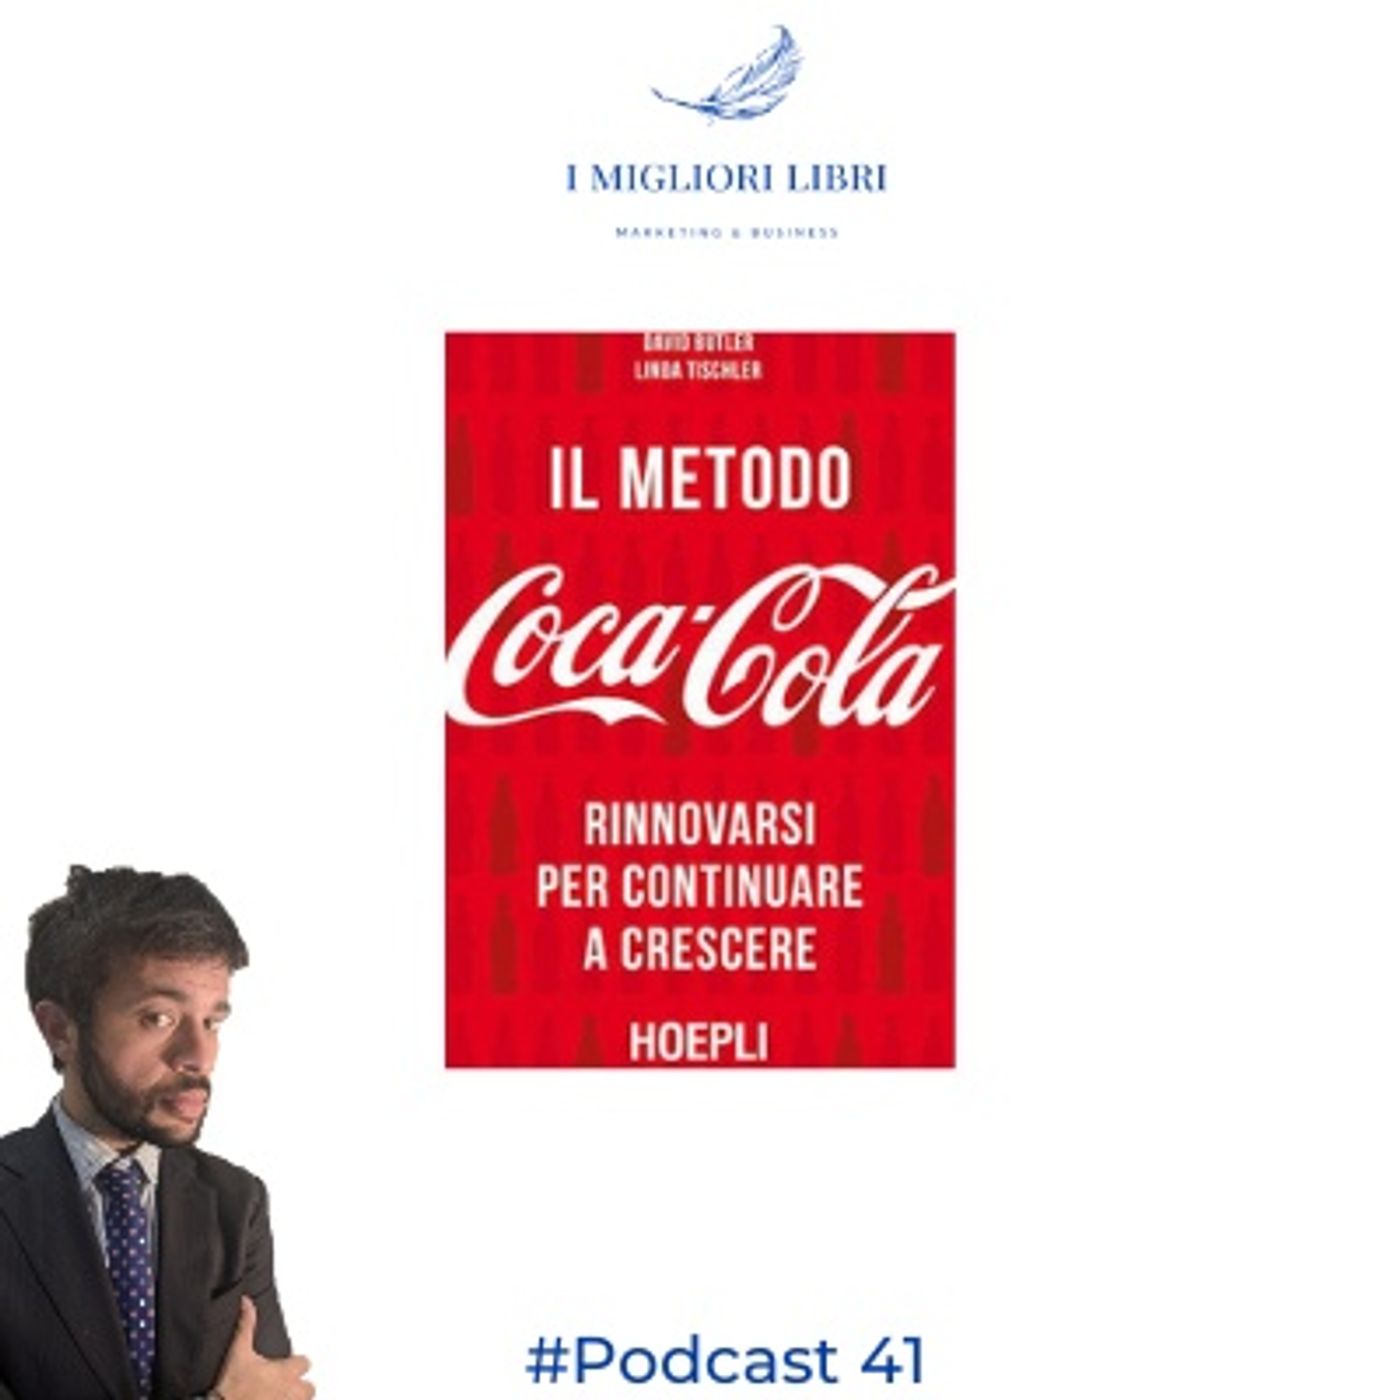 Episodio 41 "Il Metodo Coca-Cola" di Butler e Tischeler- I migliori libri Marketing & Business